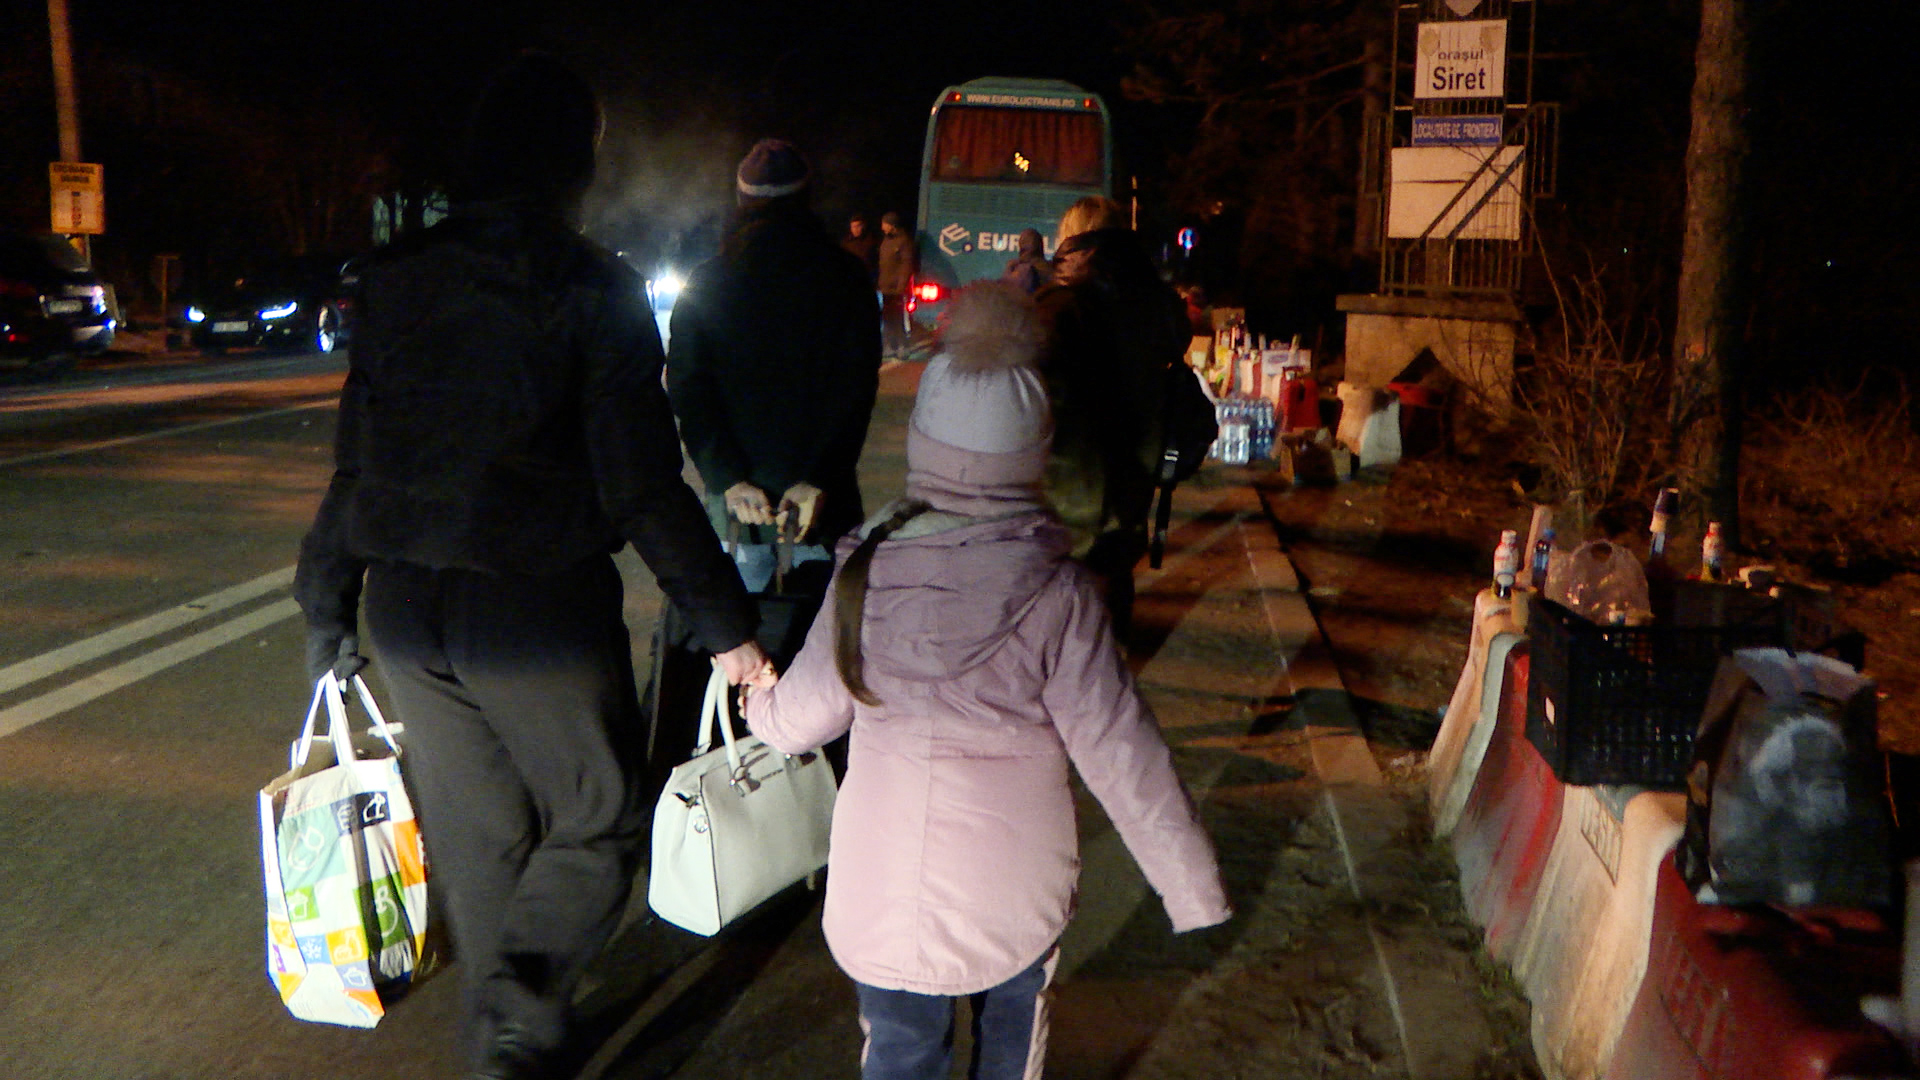 Menschen kommen nachts am Grenzübergang Siret an. | BR/Video Standbild